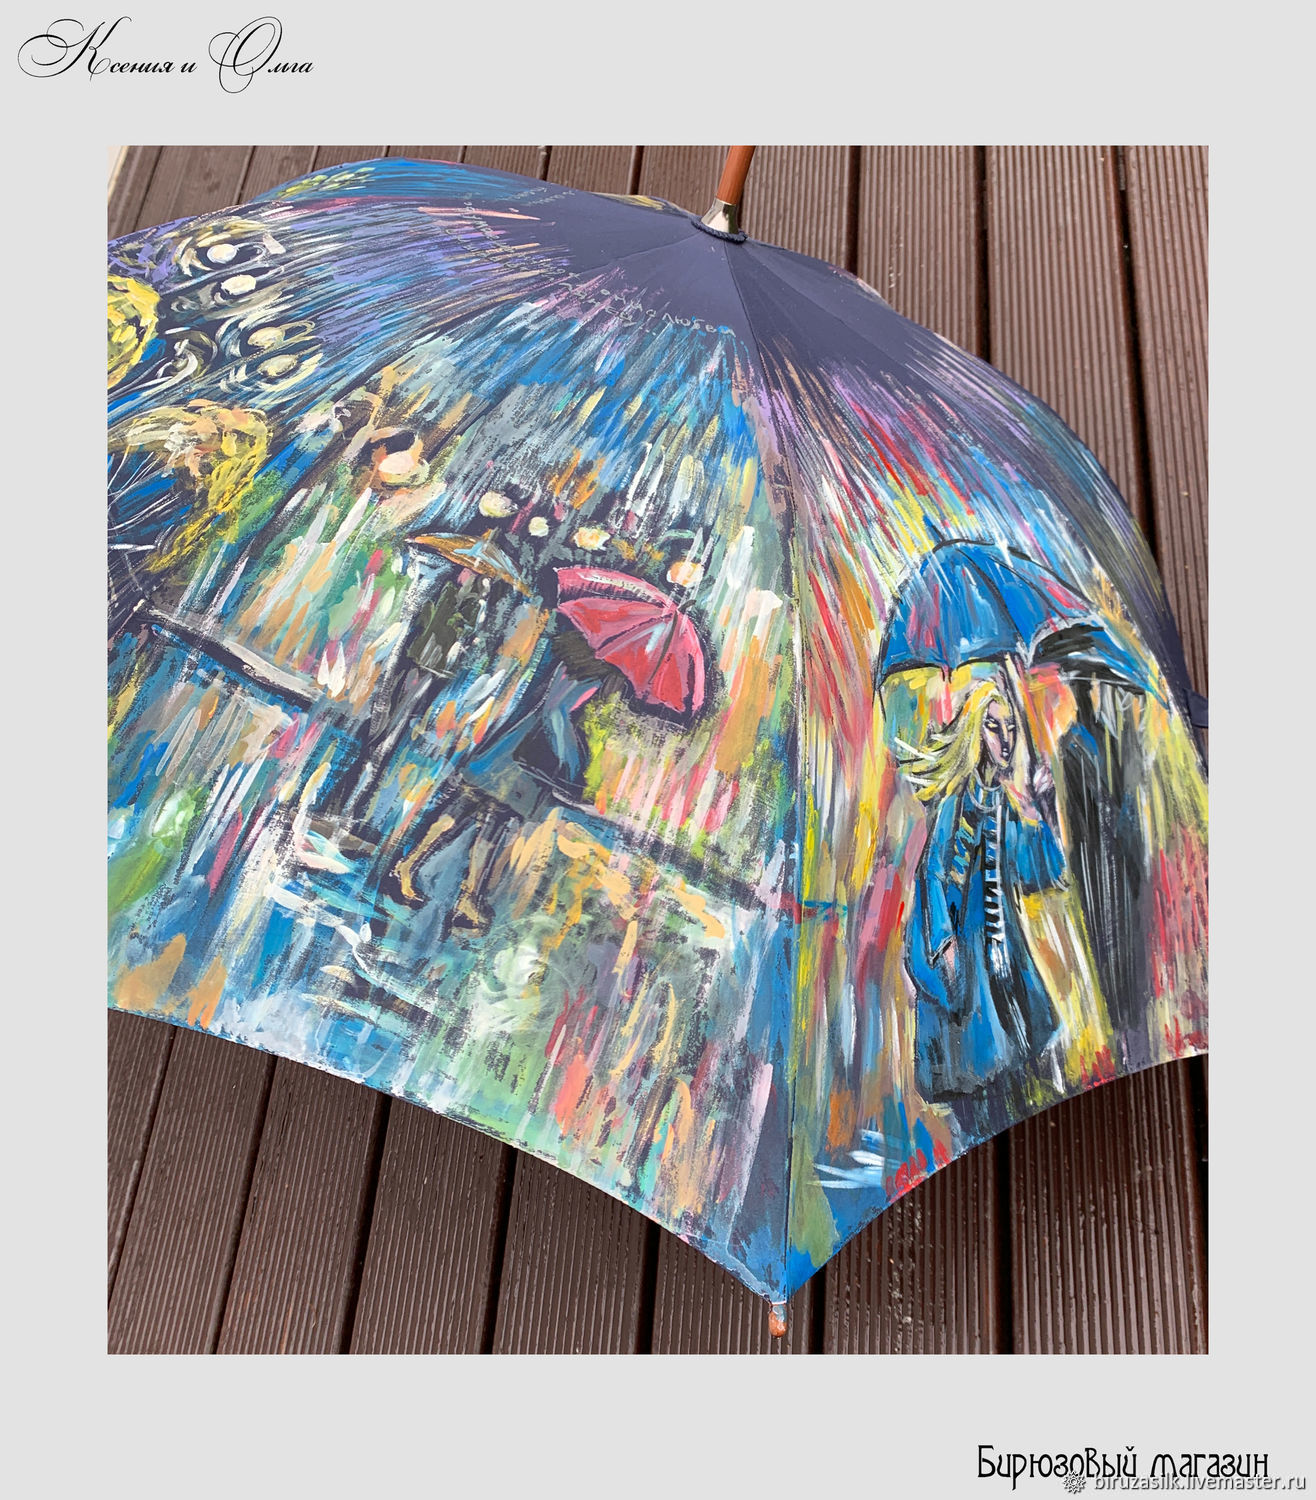 Мастер зонтиков. Зонт ручной работы. Сиреневый зонт с ручной росписью. Авторские зонты из Питера.